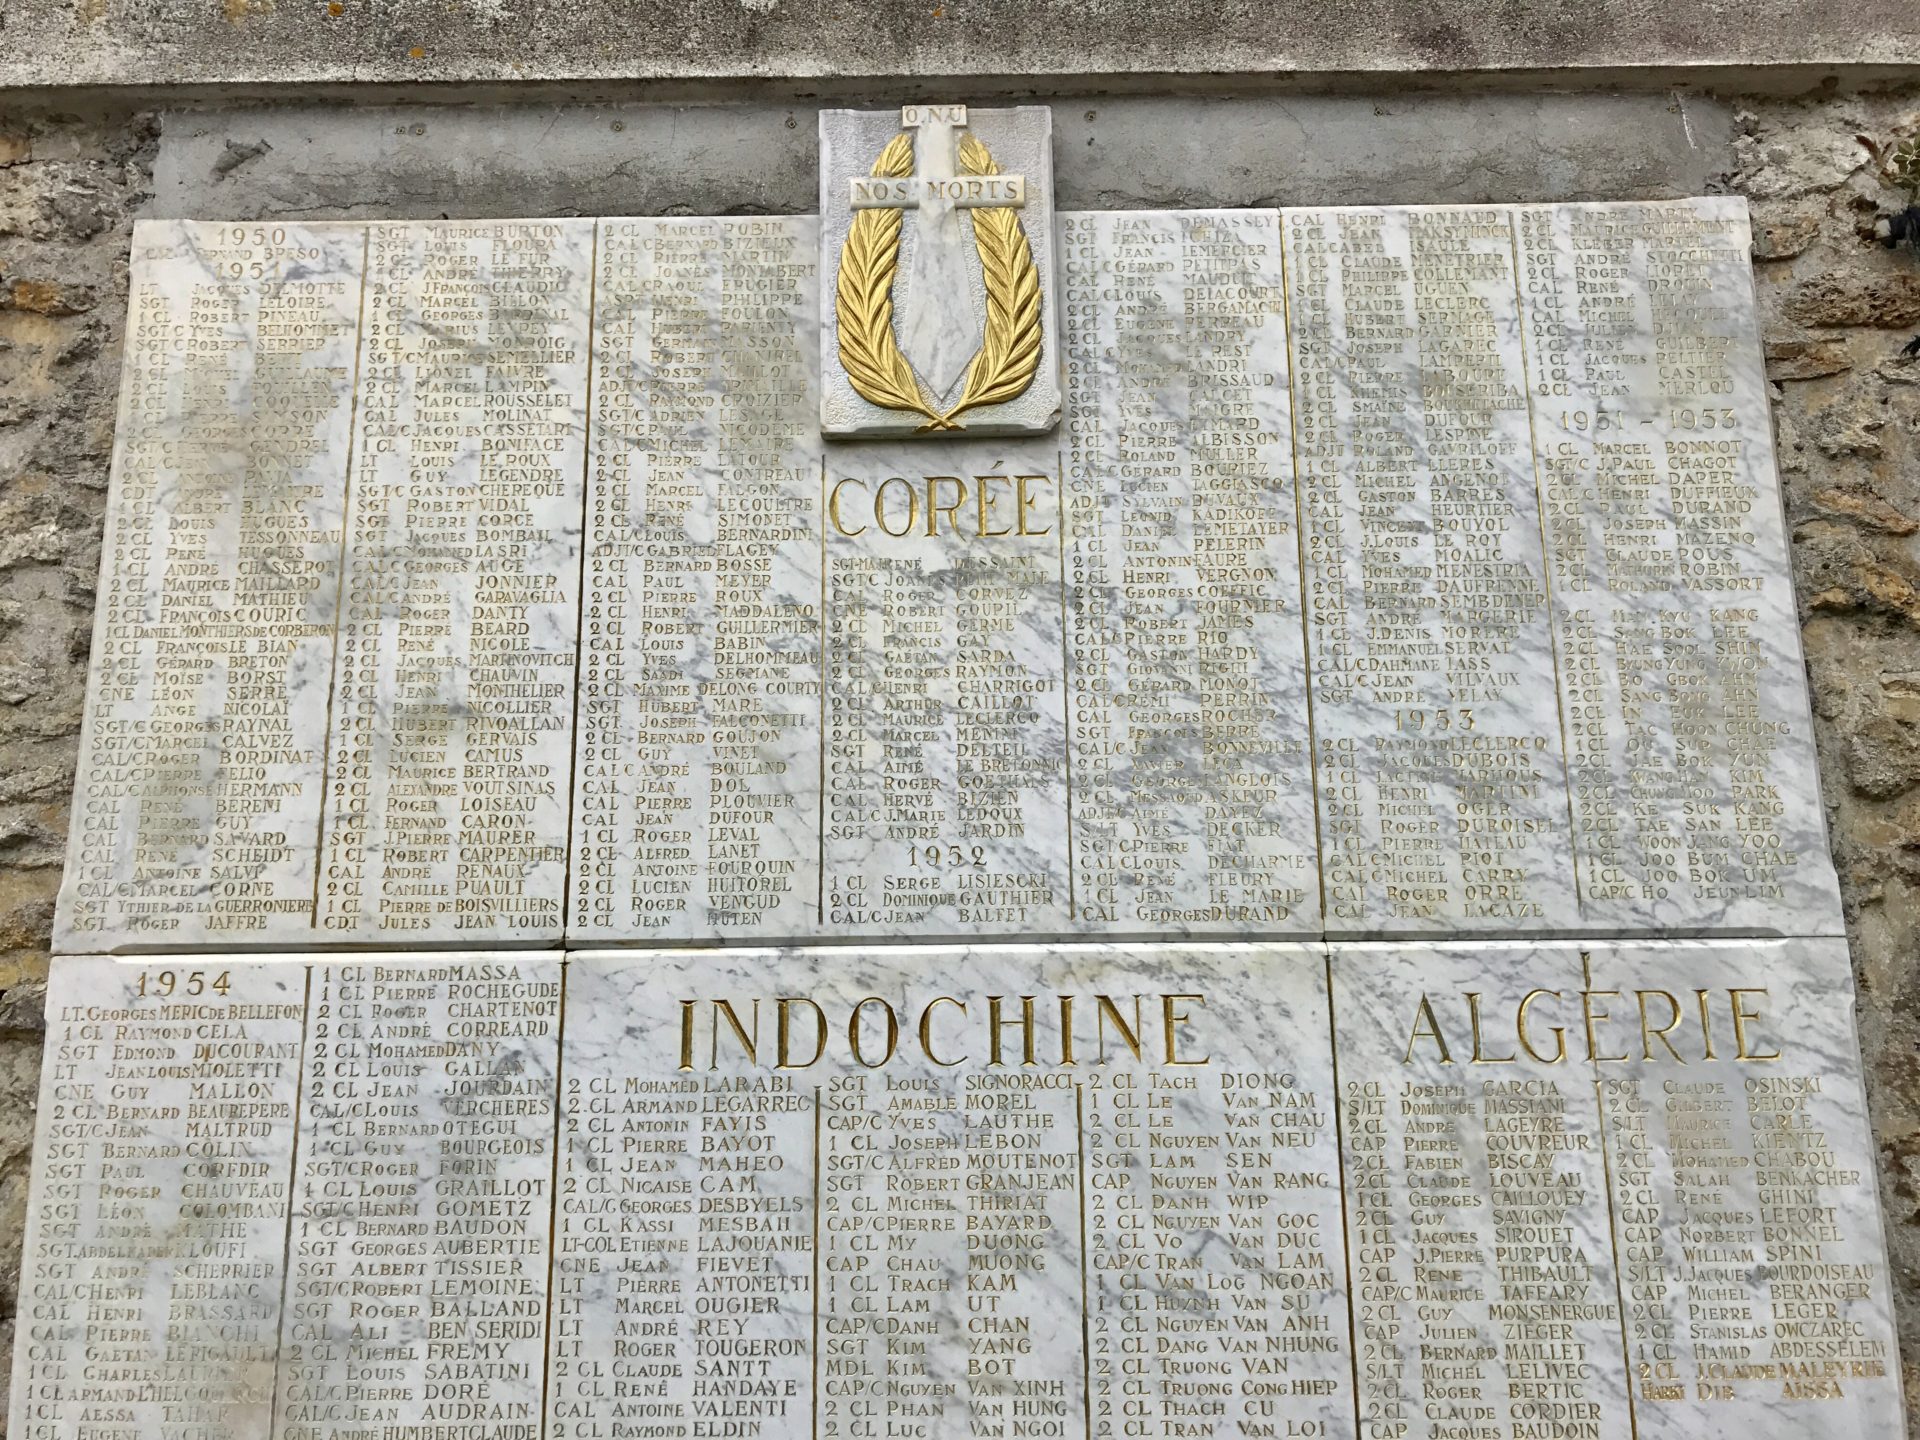 Korean War Memorials - Saint-Germain-en-Laye - France